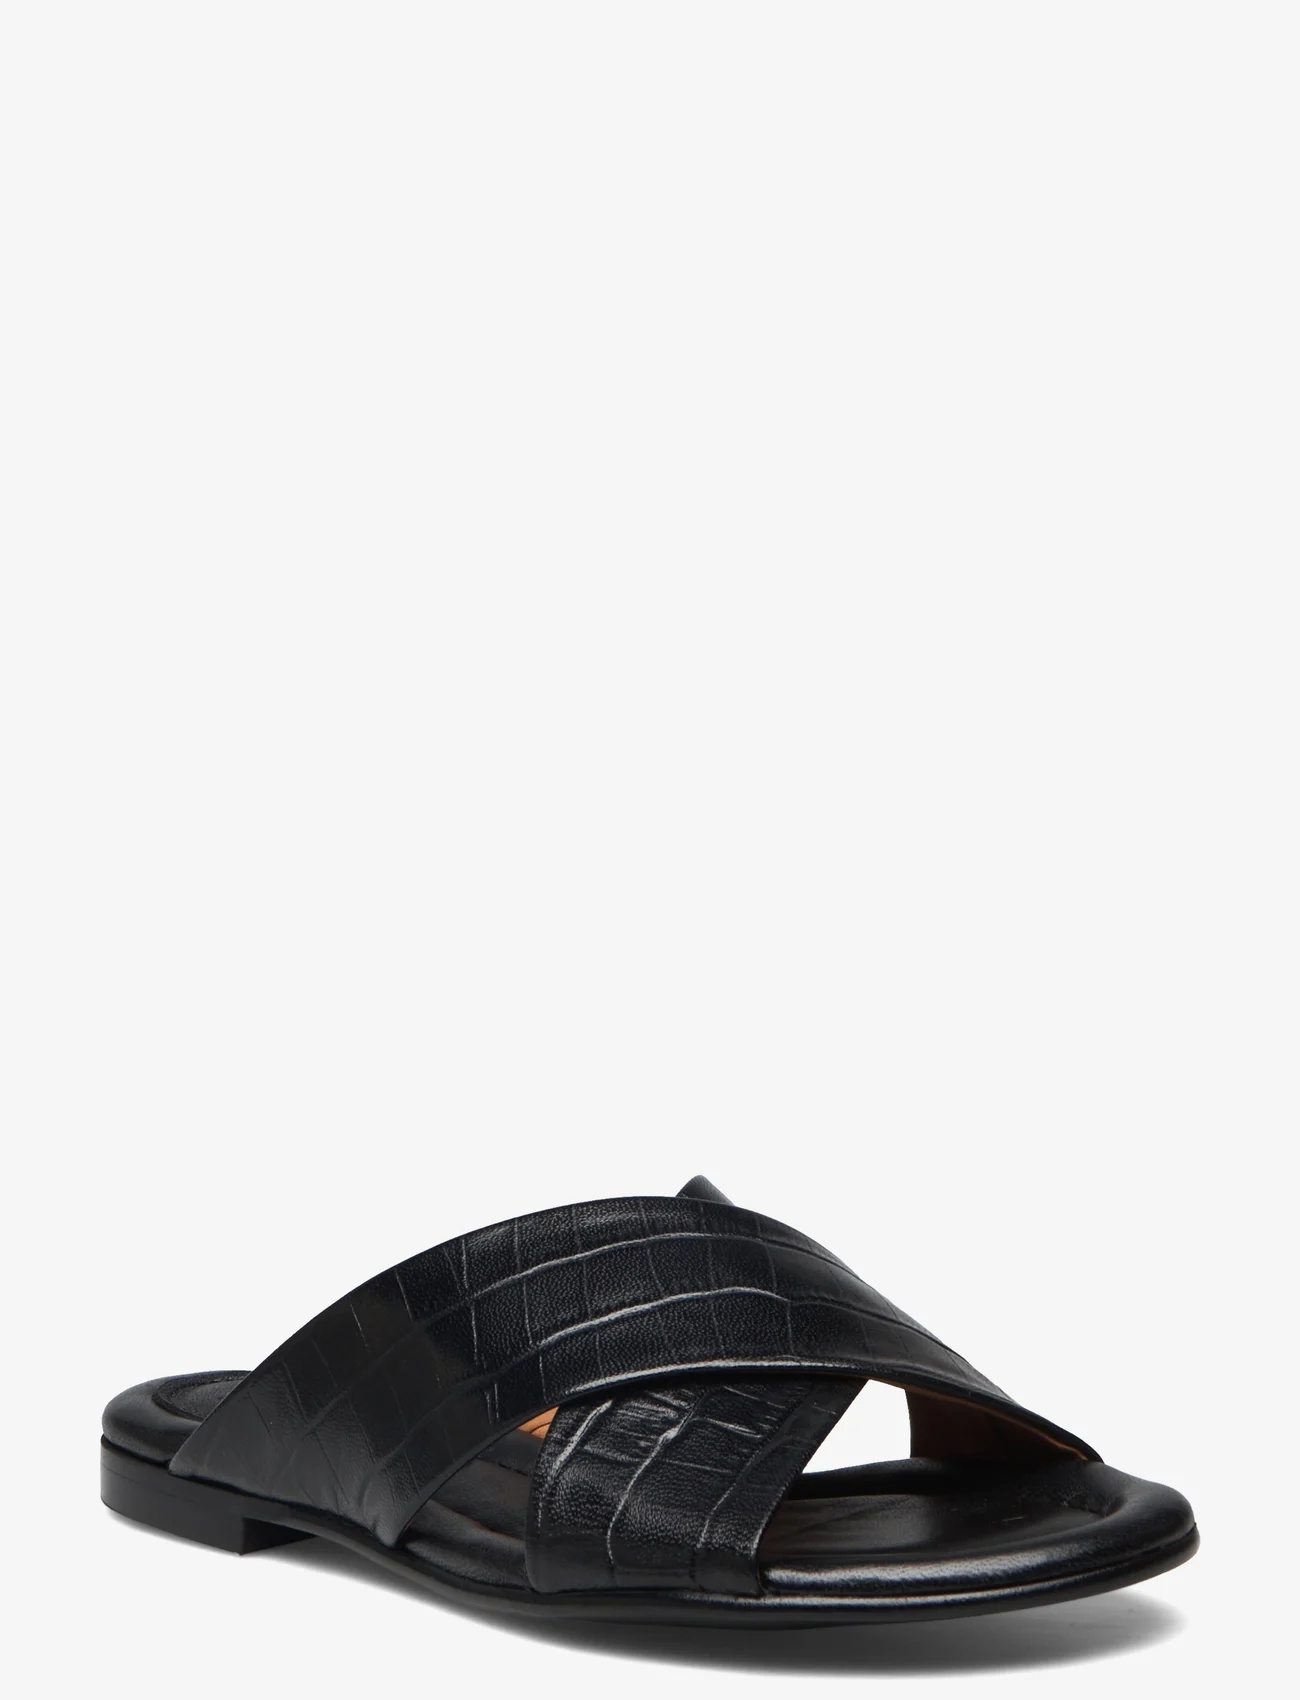 Billi Bi - Sandals - flat sandals - black croco 20 - 0